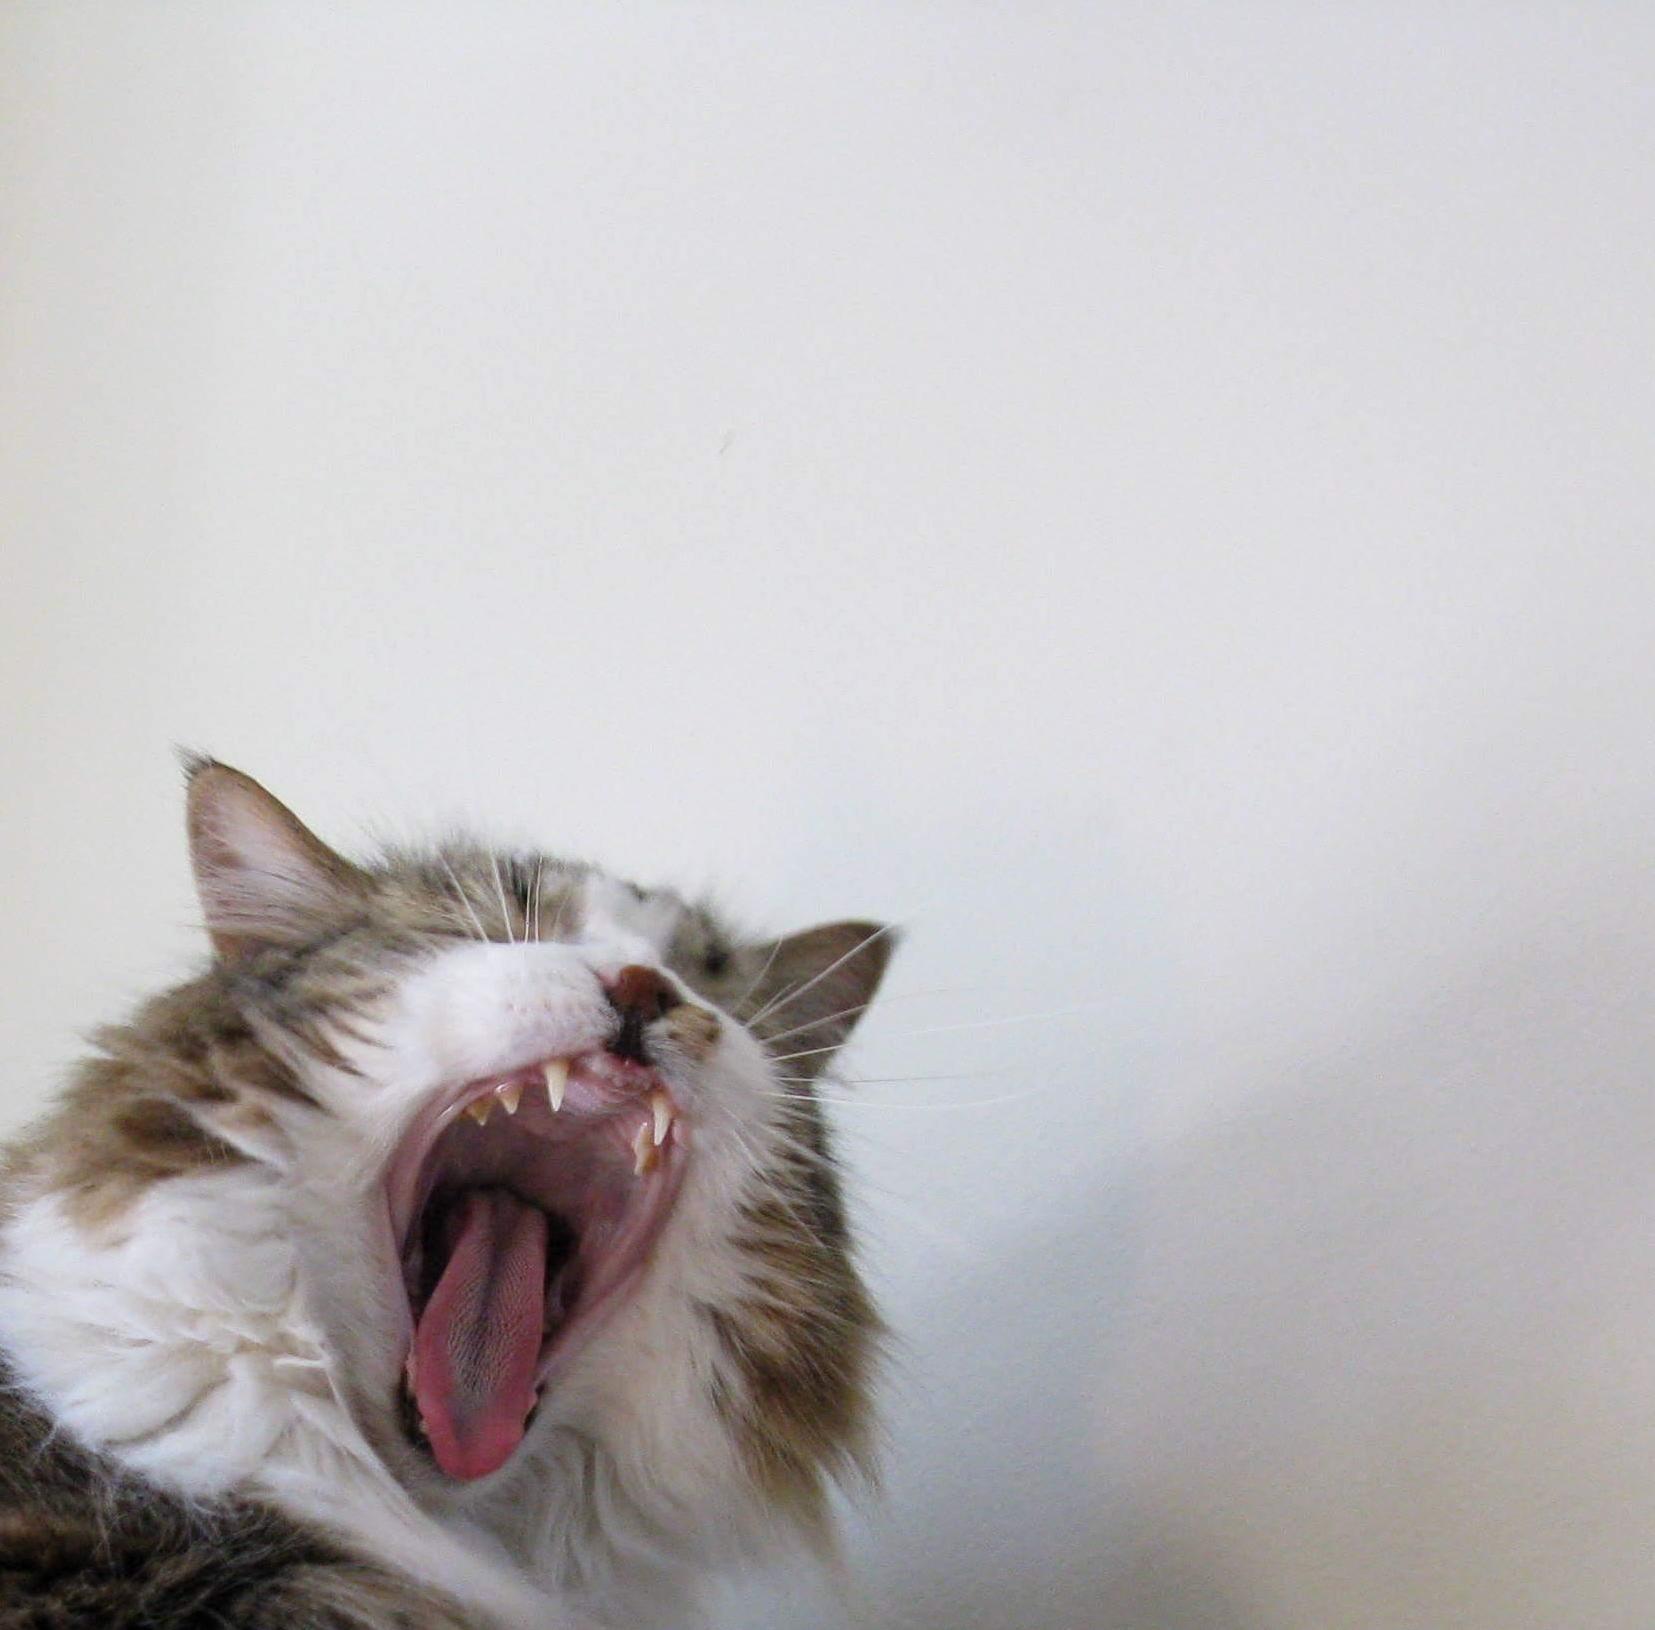 Yawning. looks like yelling.